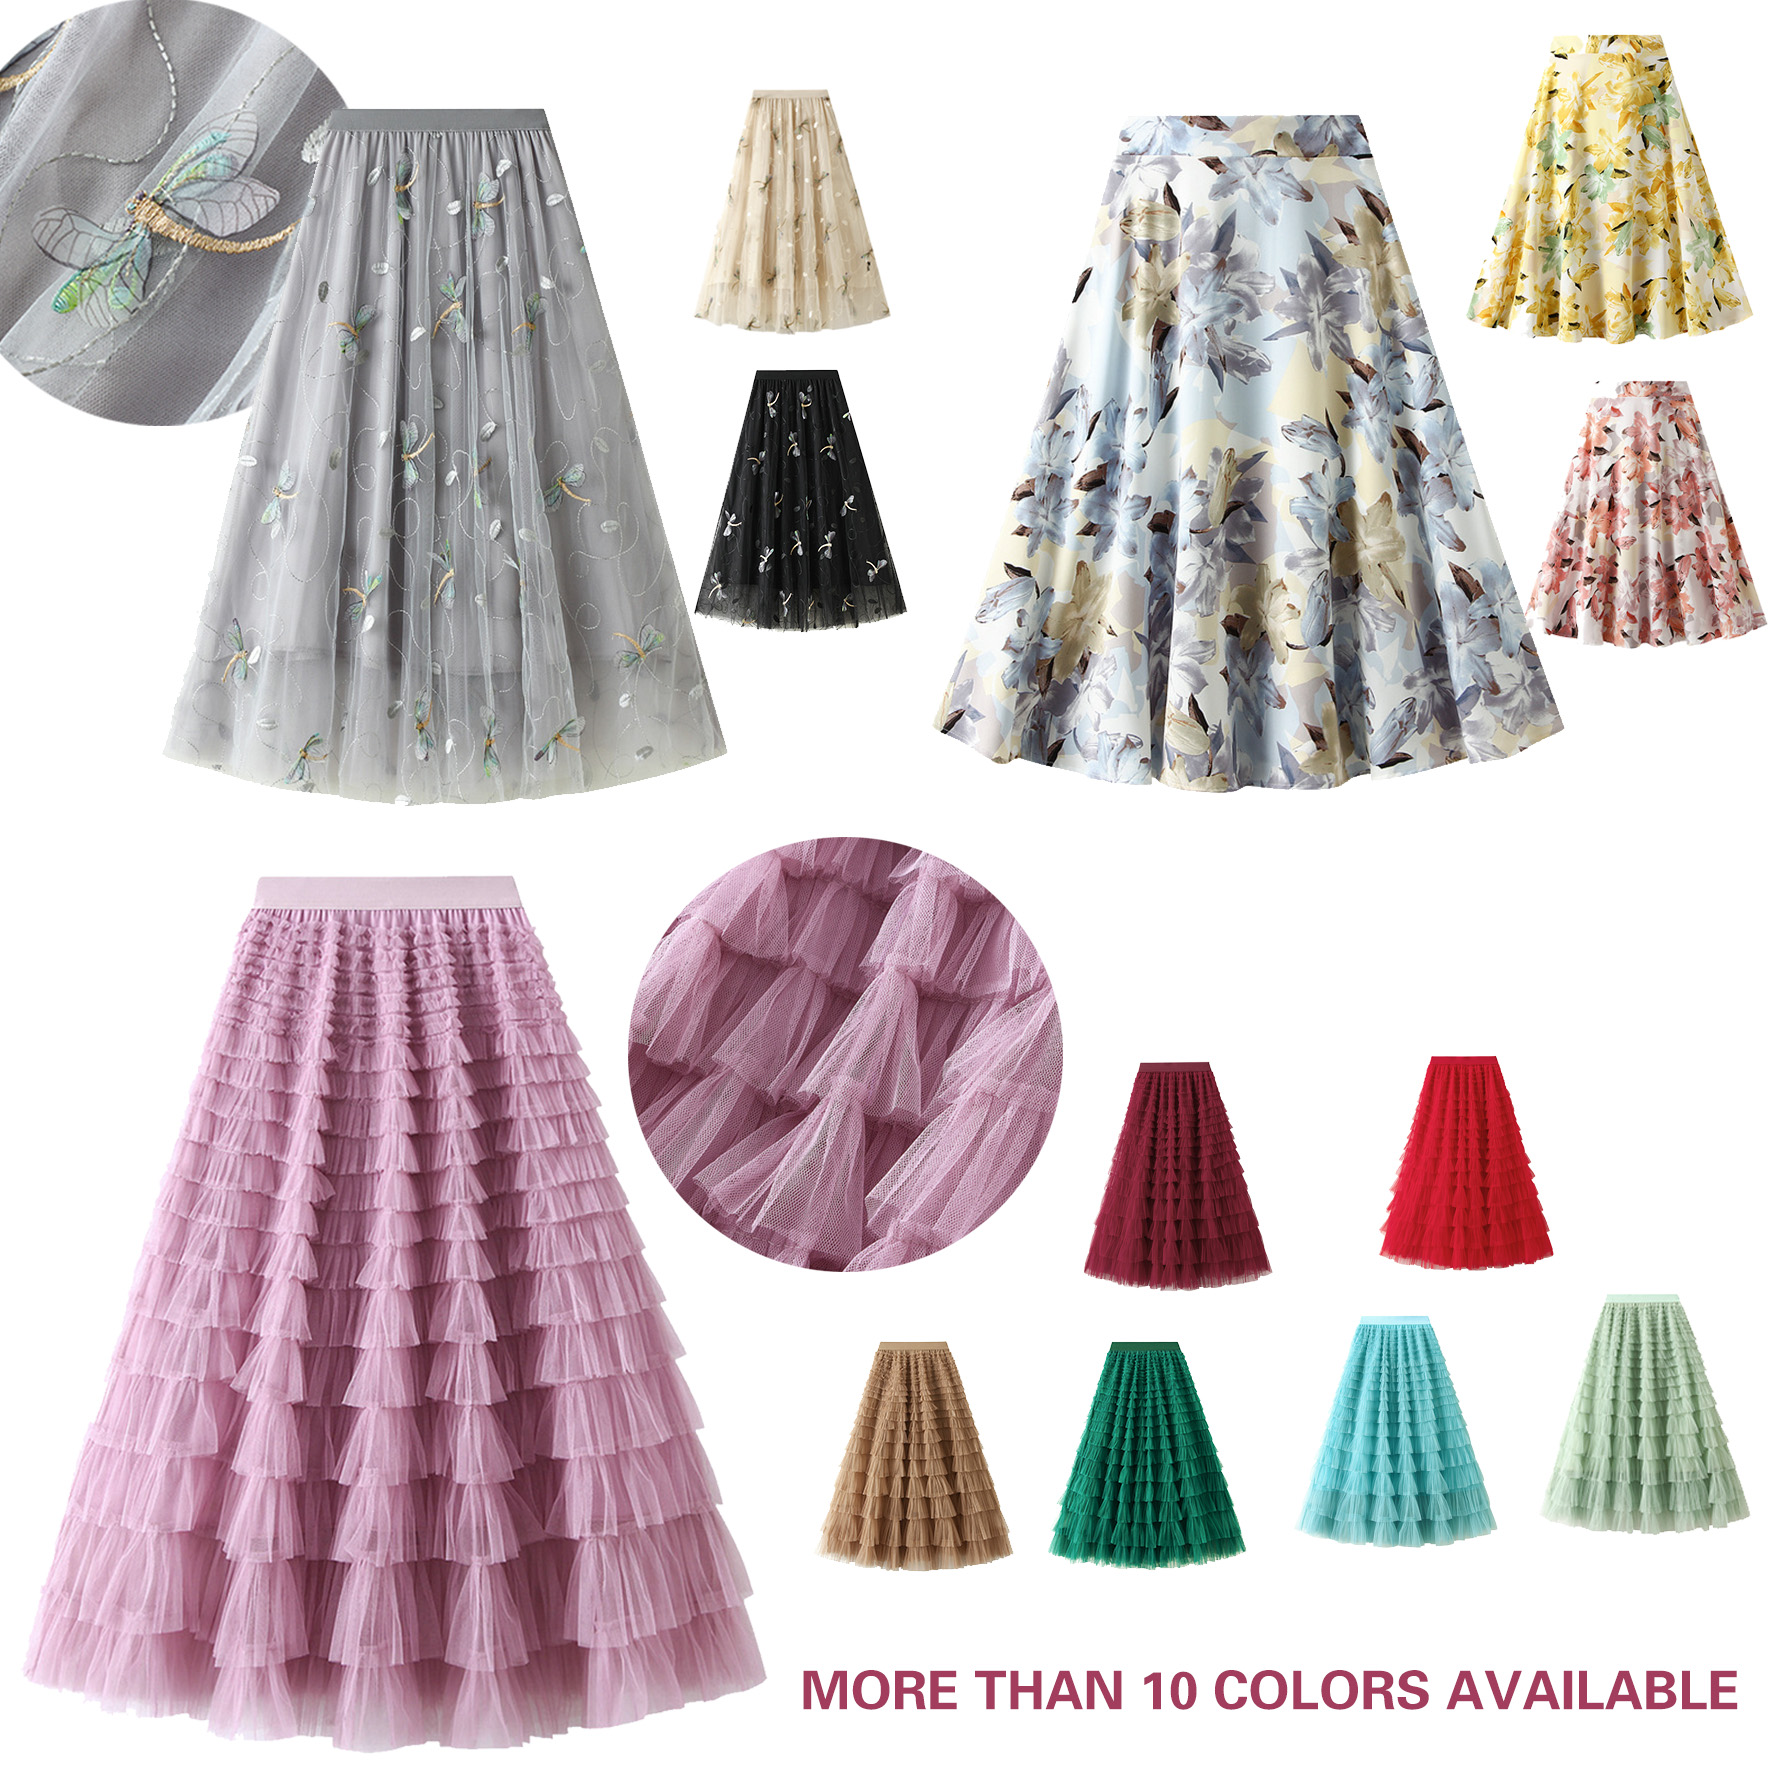 Saias femininas saia em camada de moda Tutu Skirtt Um vestido projetado pela linha com decoração floral cintura elástica de tamanho mais adequado para todos os tamanhos